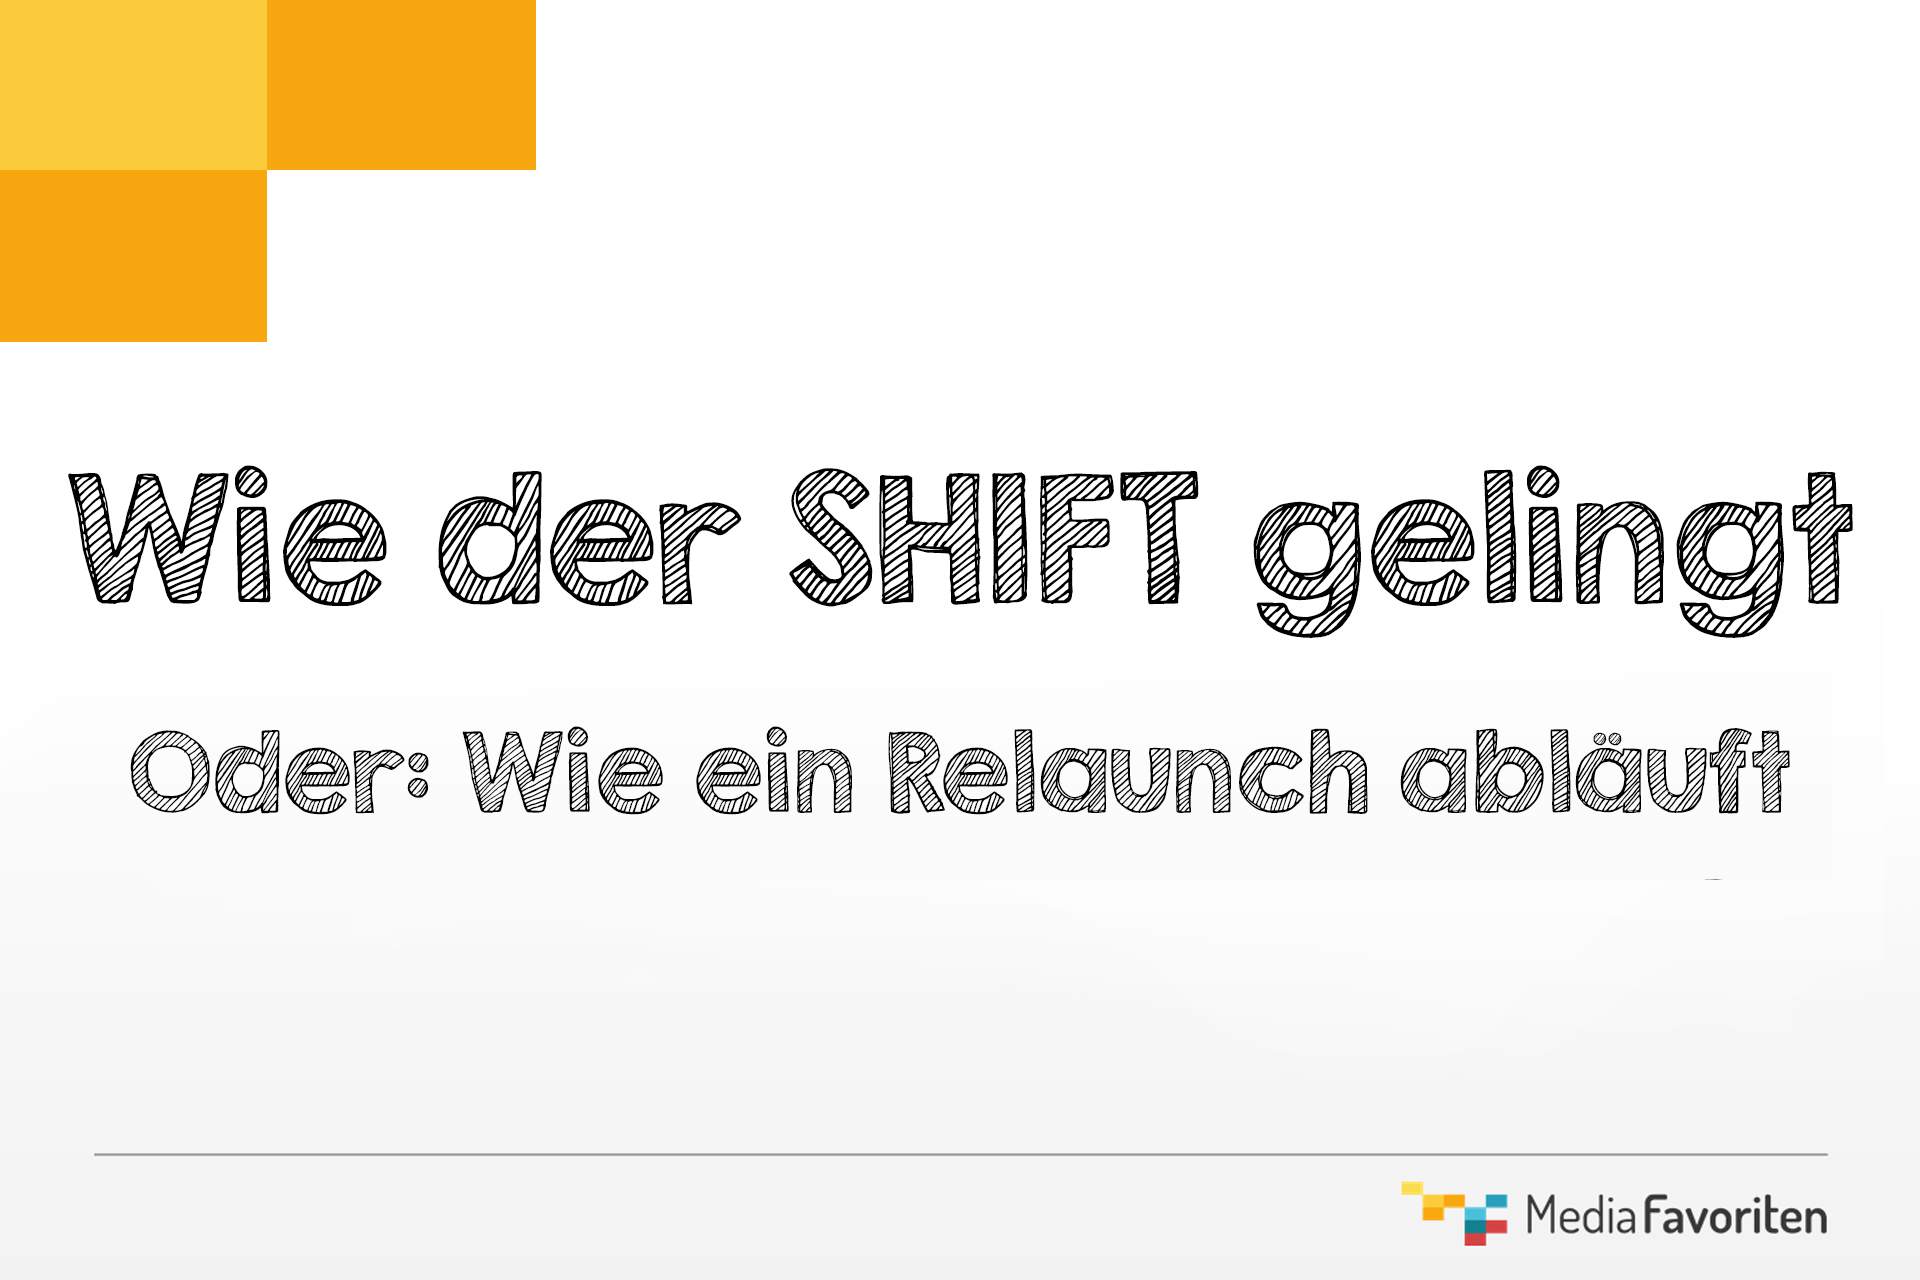 shift_relaunch